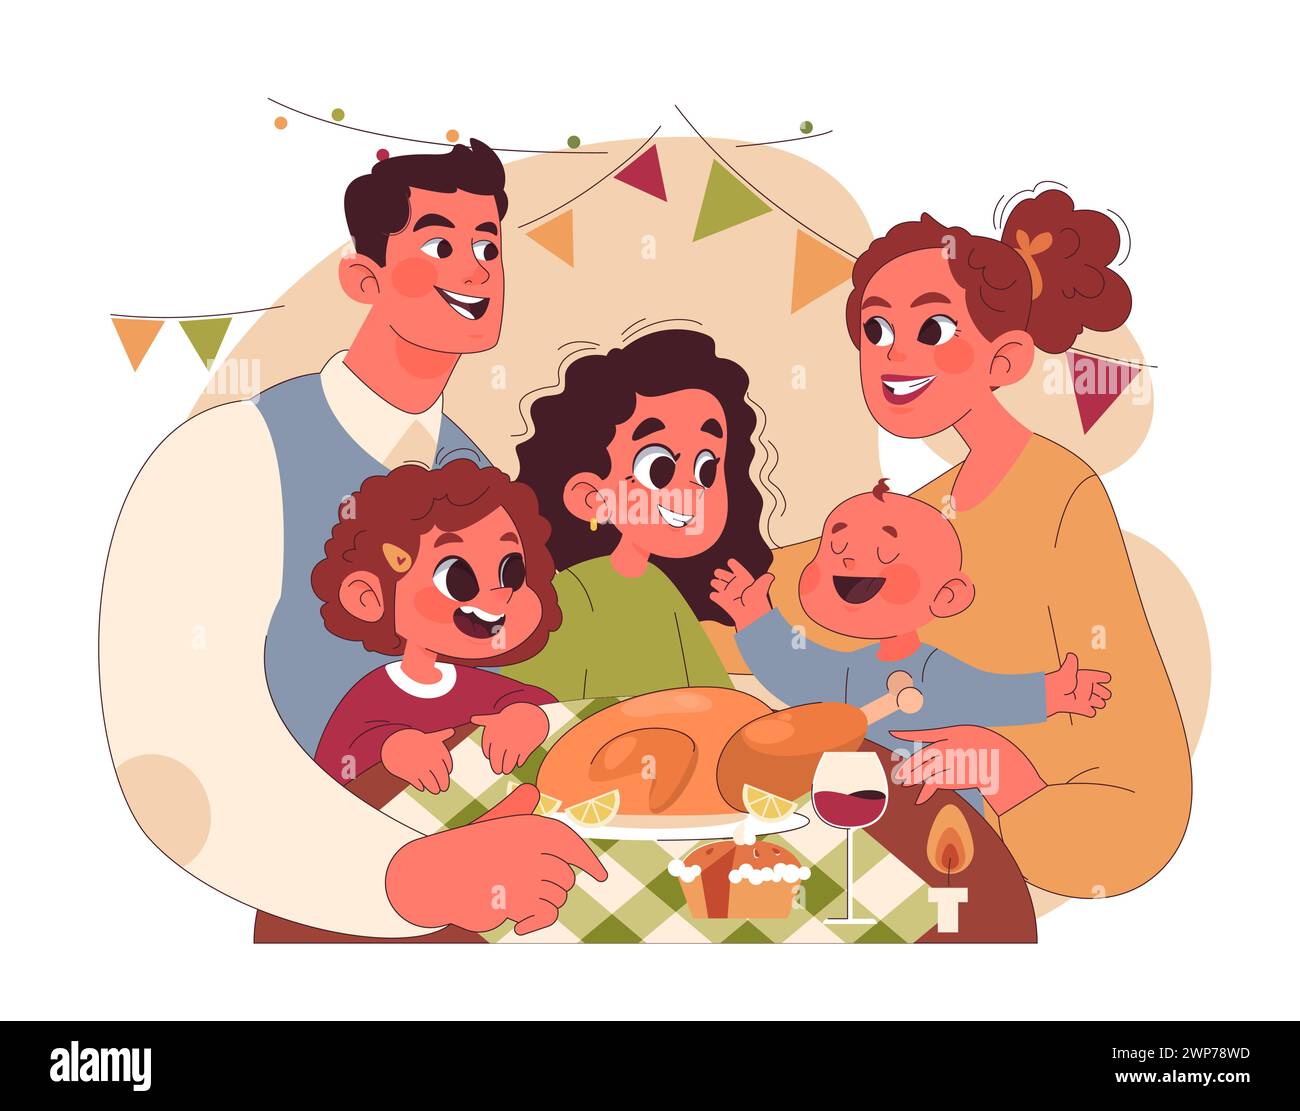 Fröhliche Familie feiert Thanksgiving. Amerikanische Feiertagsessen und -Treffen. Glückliche Kinder und Eltern, die Zeit miteinander verbringen. Illustration des flachen Vektors Stock Vektor